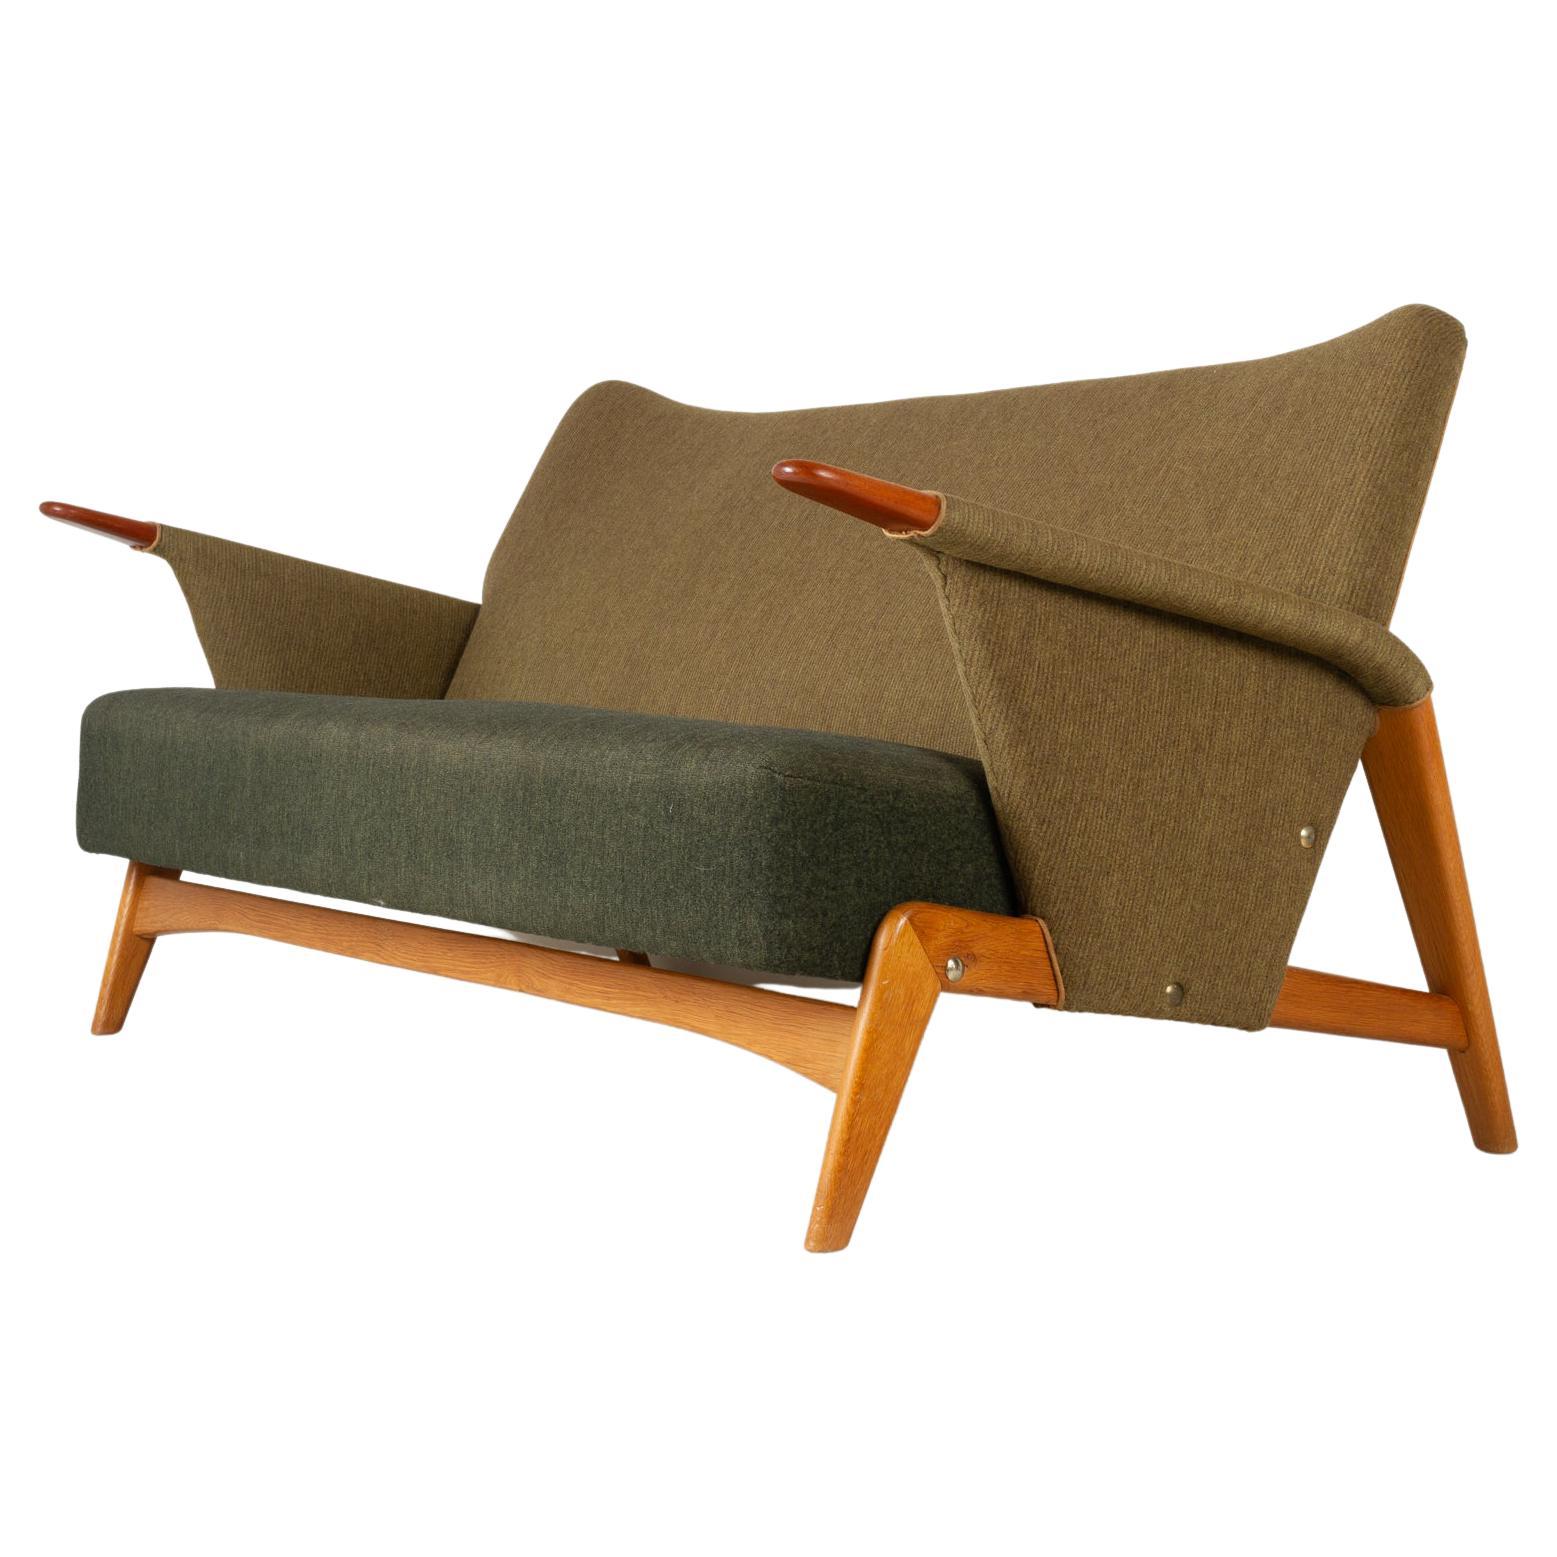 Danish Modern Sofa by Arne Hovmand-Olsen 1956